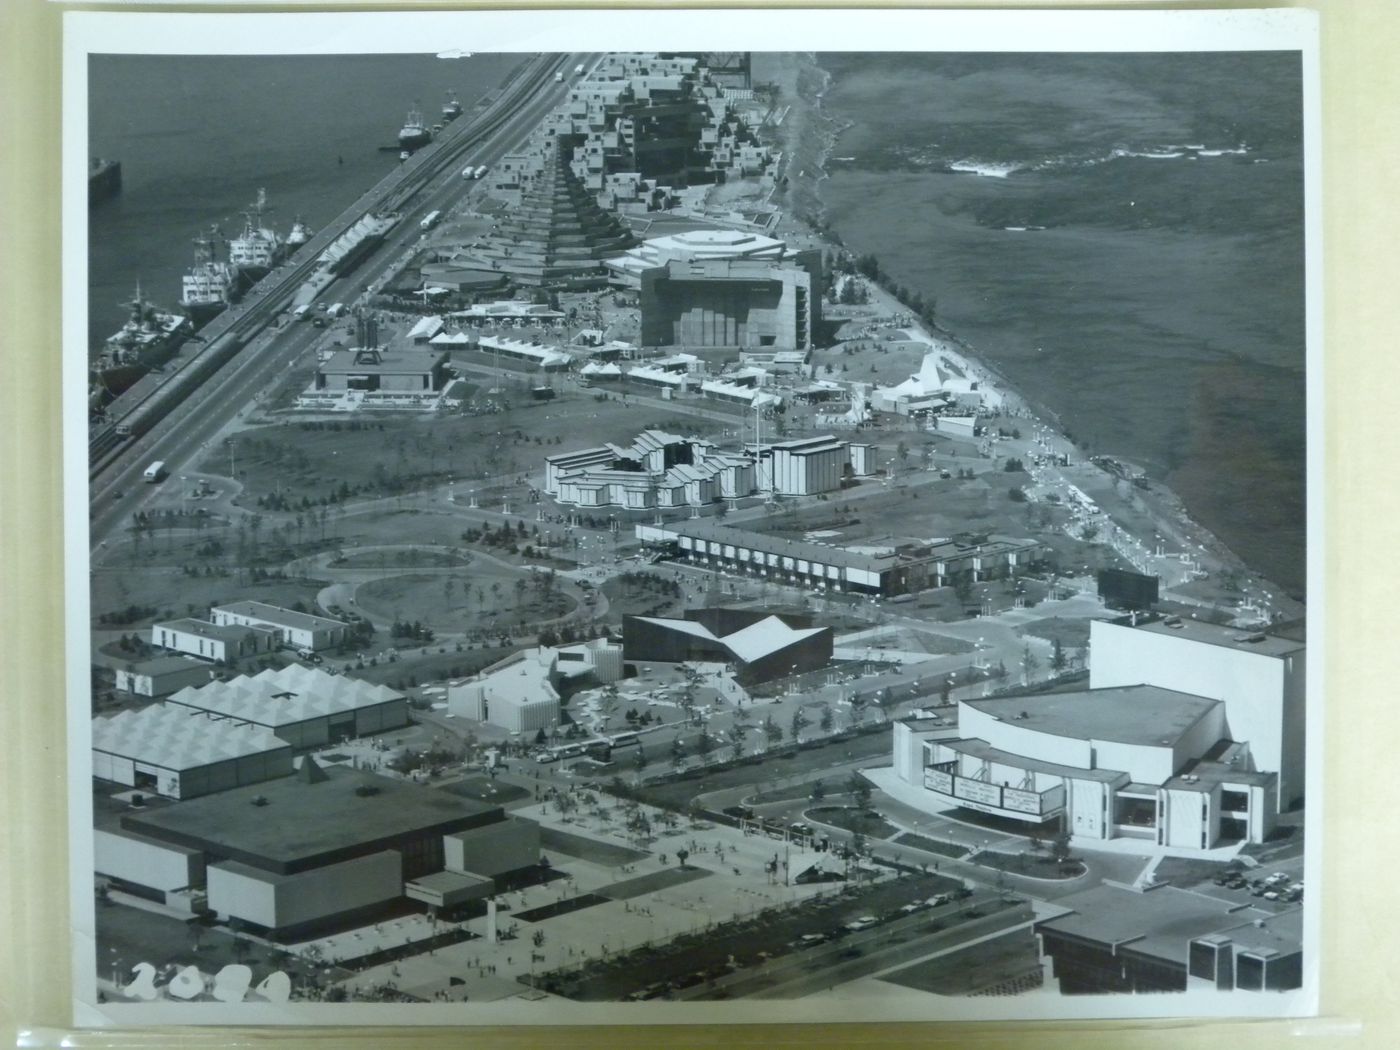 Aerial view of the Cité du Havre with its pavilions, Expo 67, Montréal, Québec